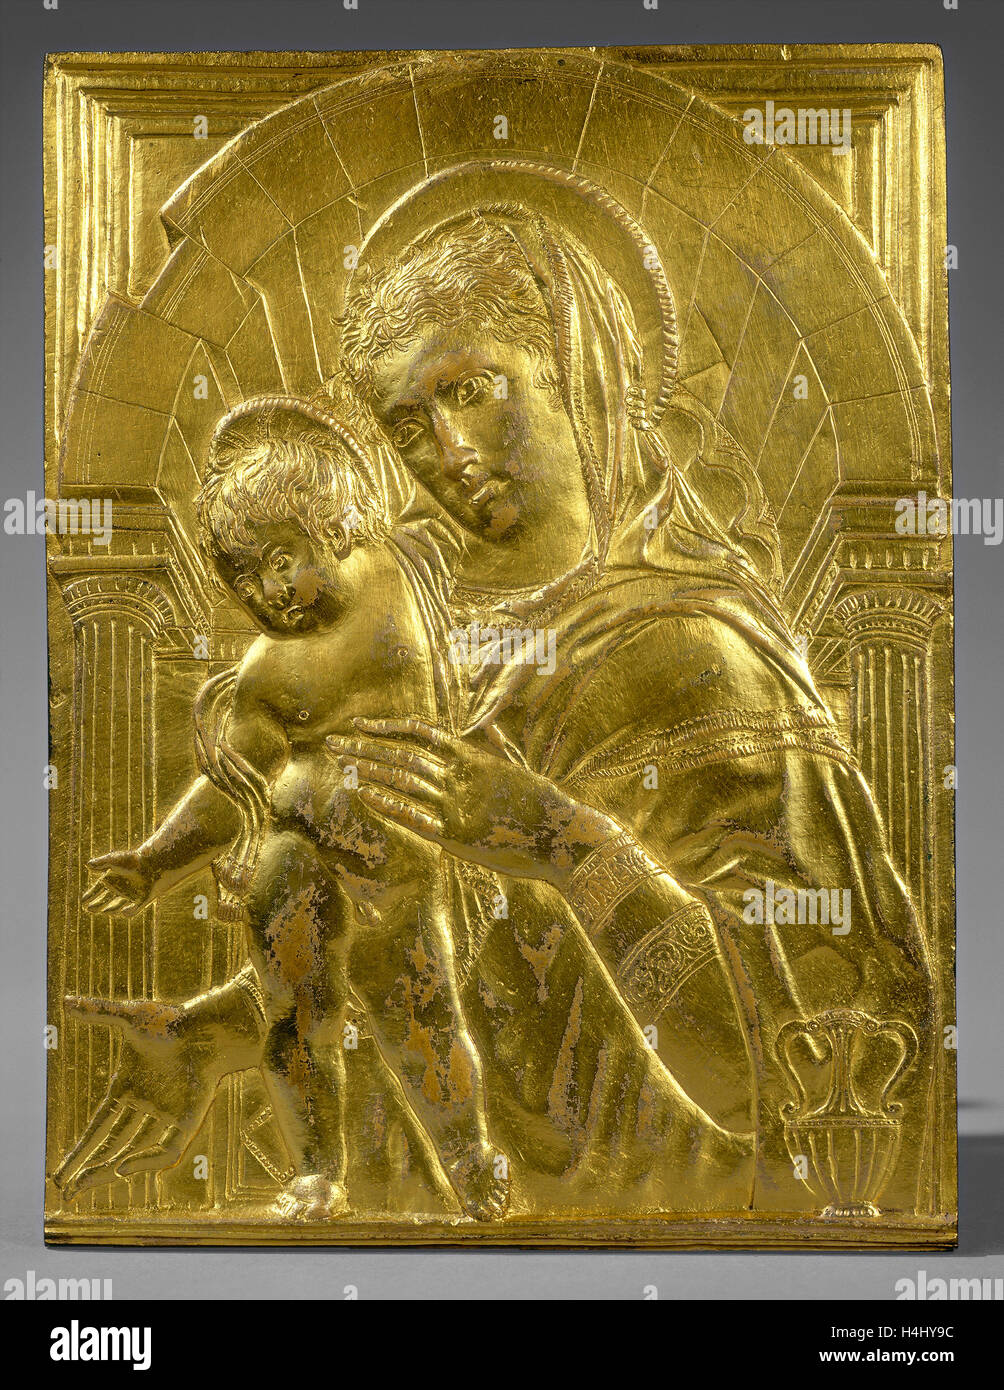 Disciple de Donatello, Vierge à l'enfant dans une arche, milieu 15e siècle, bronze doré Banque D'Images